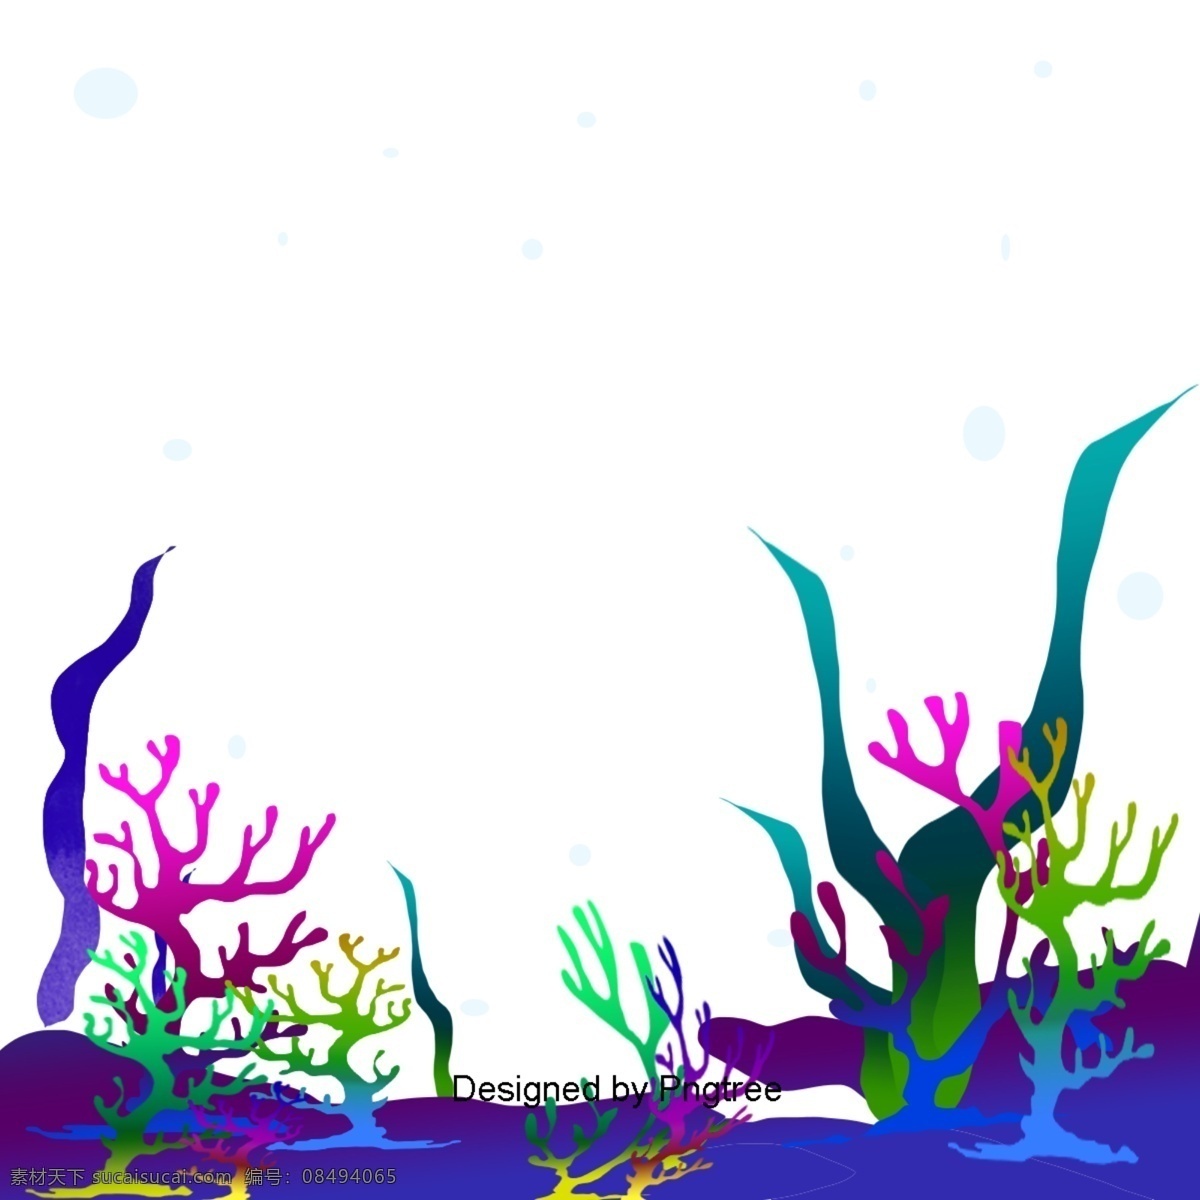 卡通 手绘 水下 世界 简单 风格 海洋鱼类 创意 图形 图案 动物